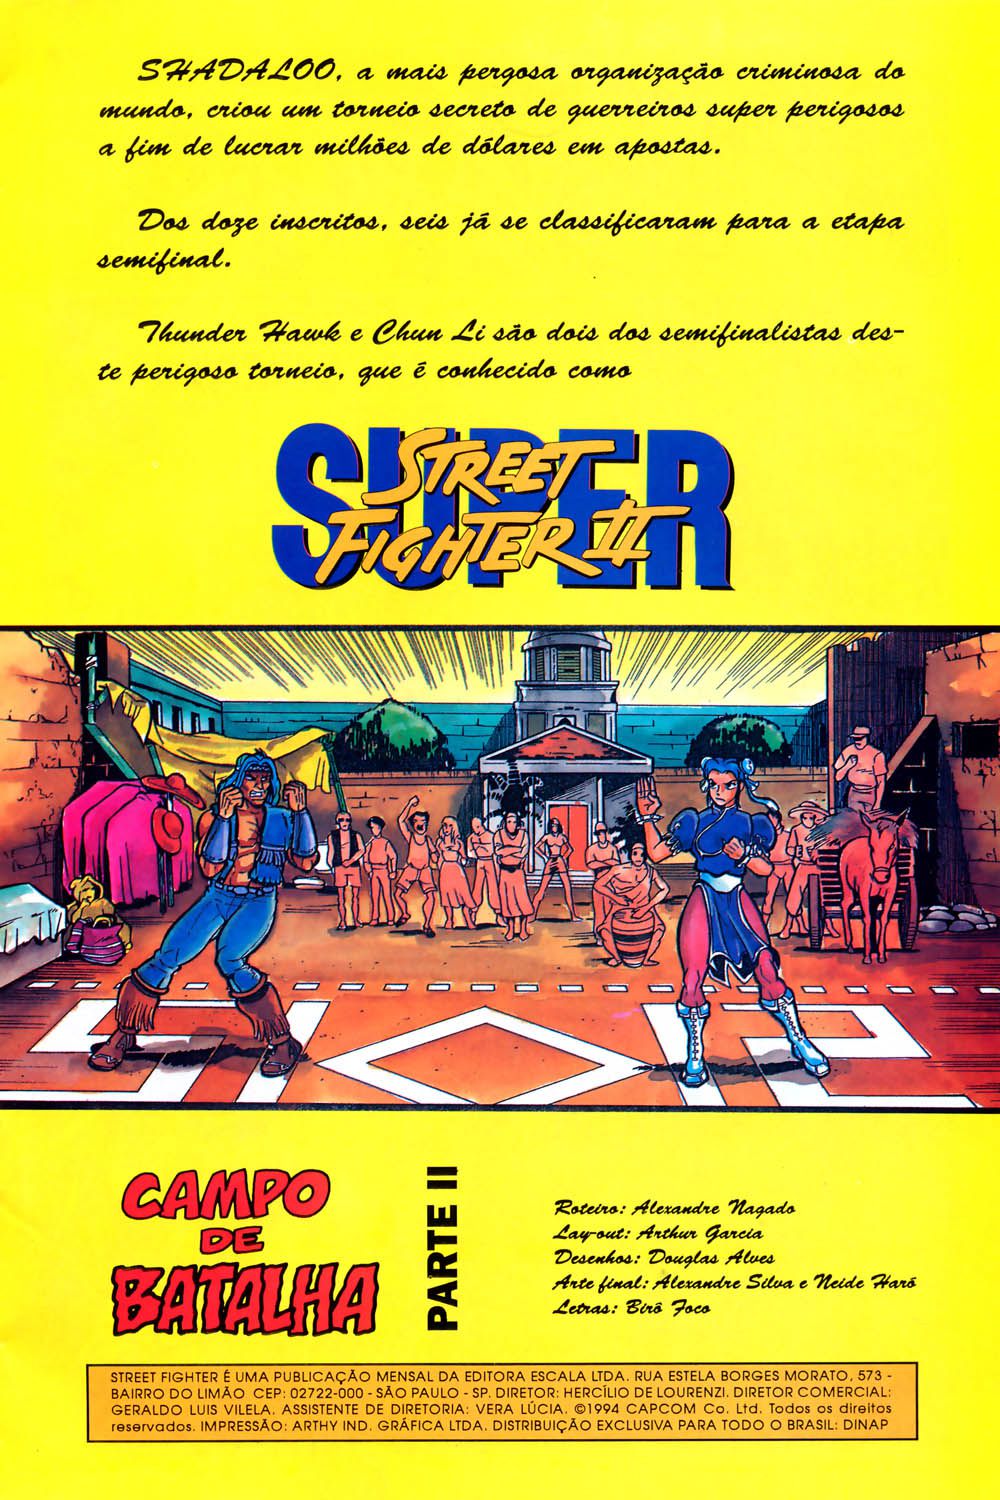 Super Street fighter n 7 ( portuguese ) 3